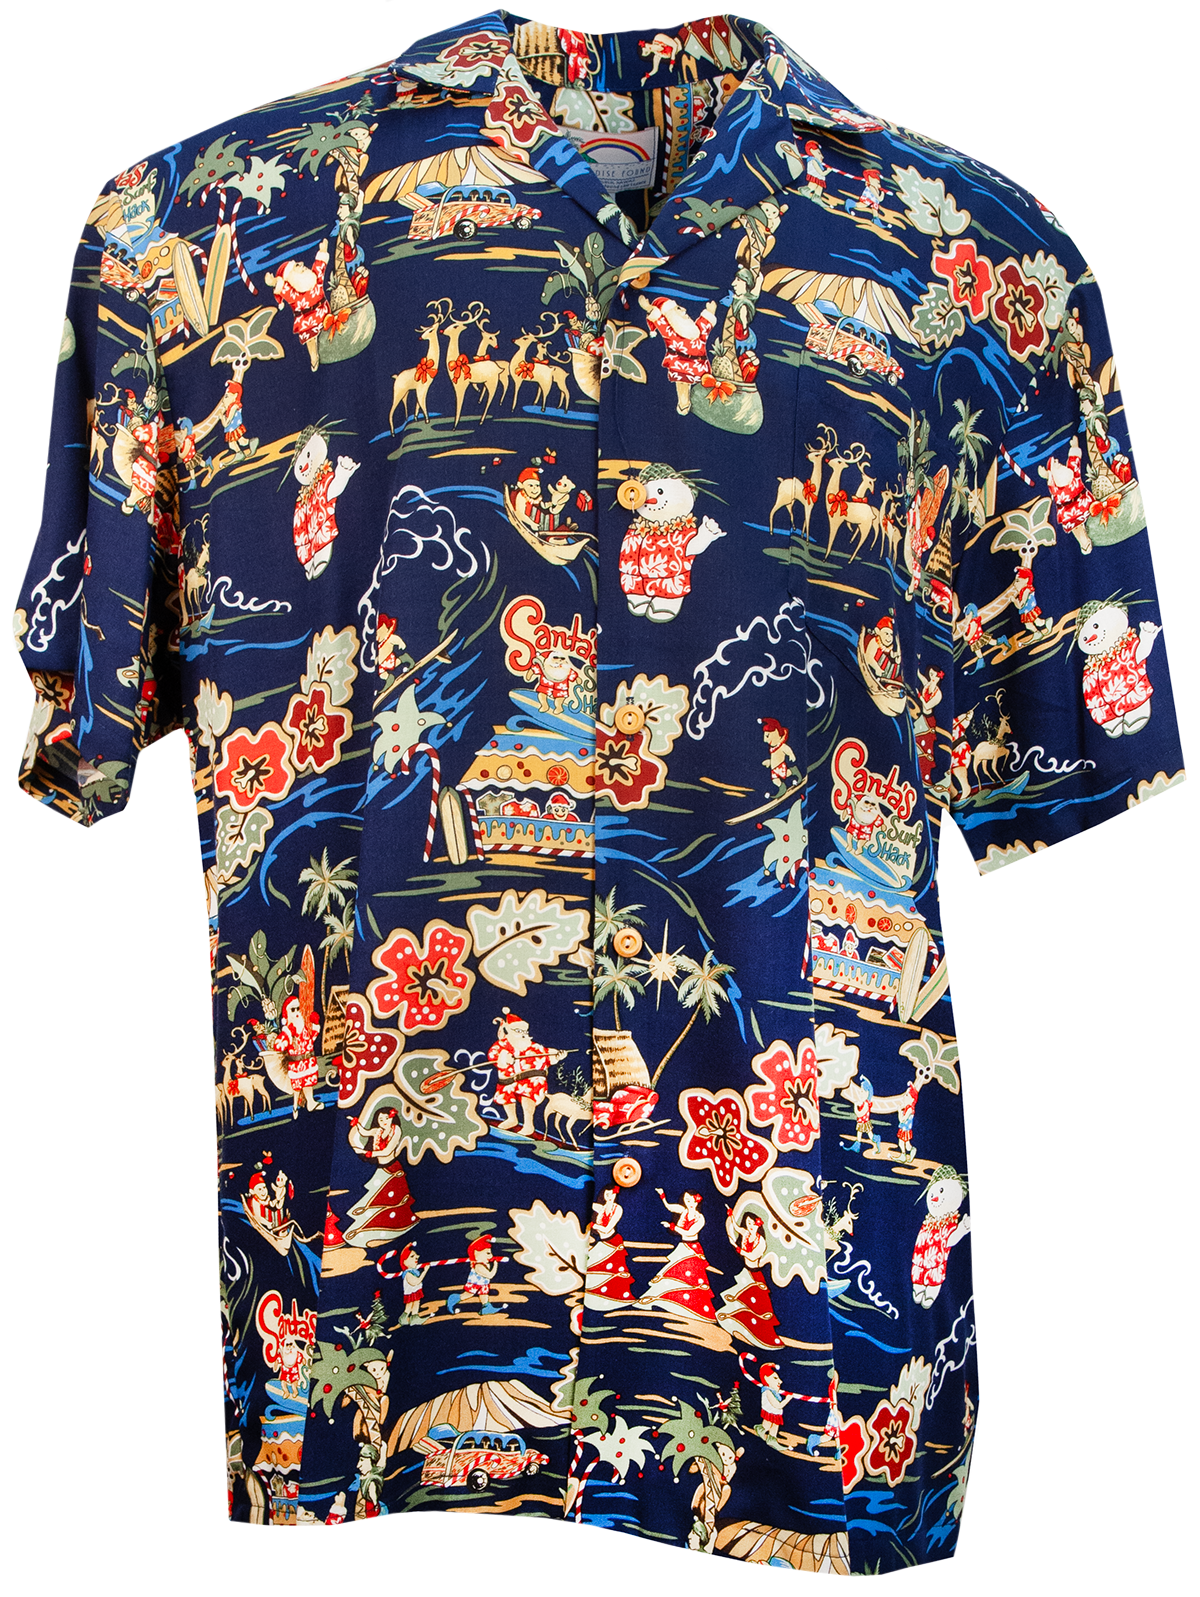 Paradise Found Shirts - Jungle Bird Magnum PI Shirts - USA Made